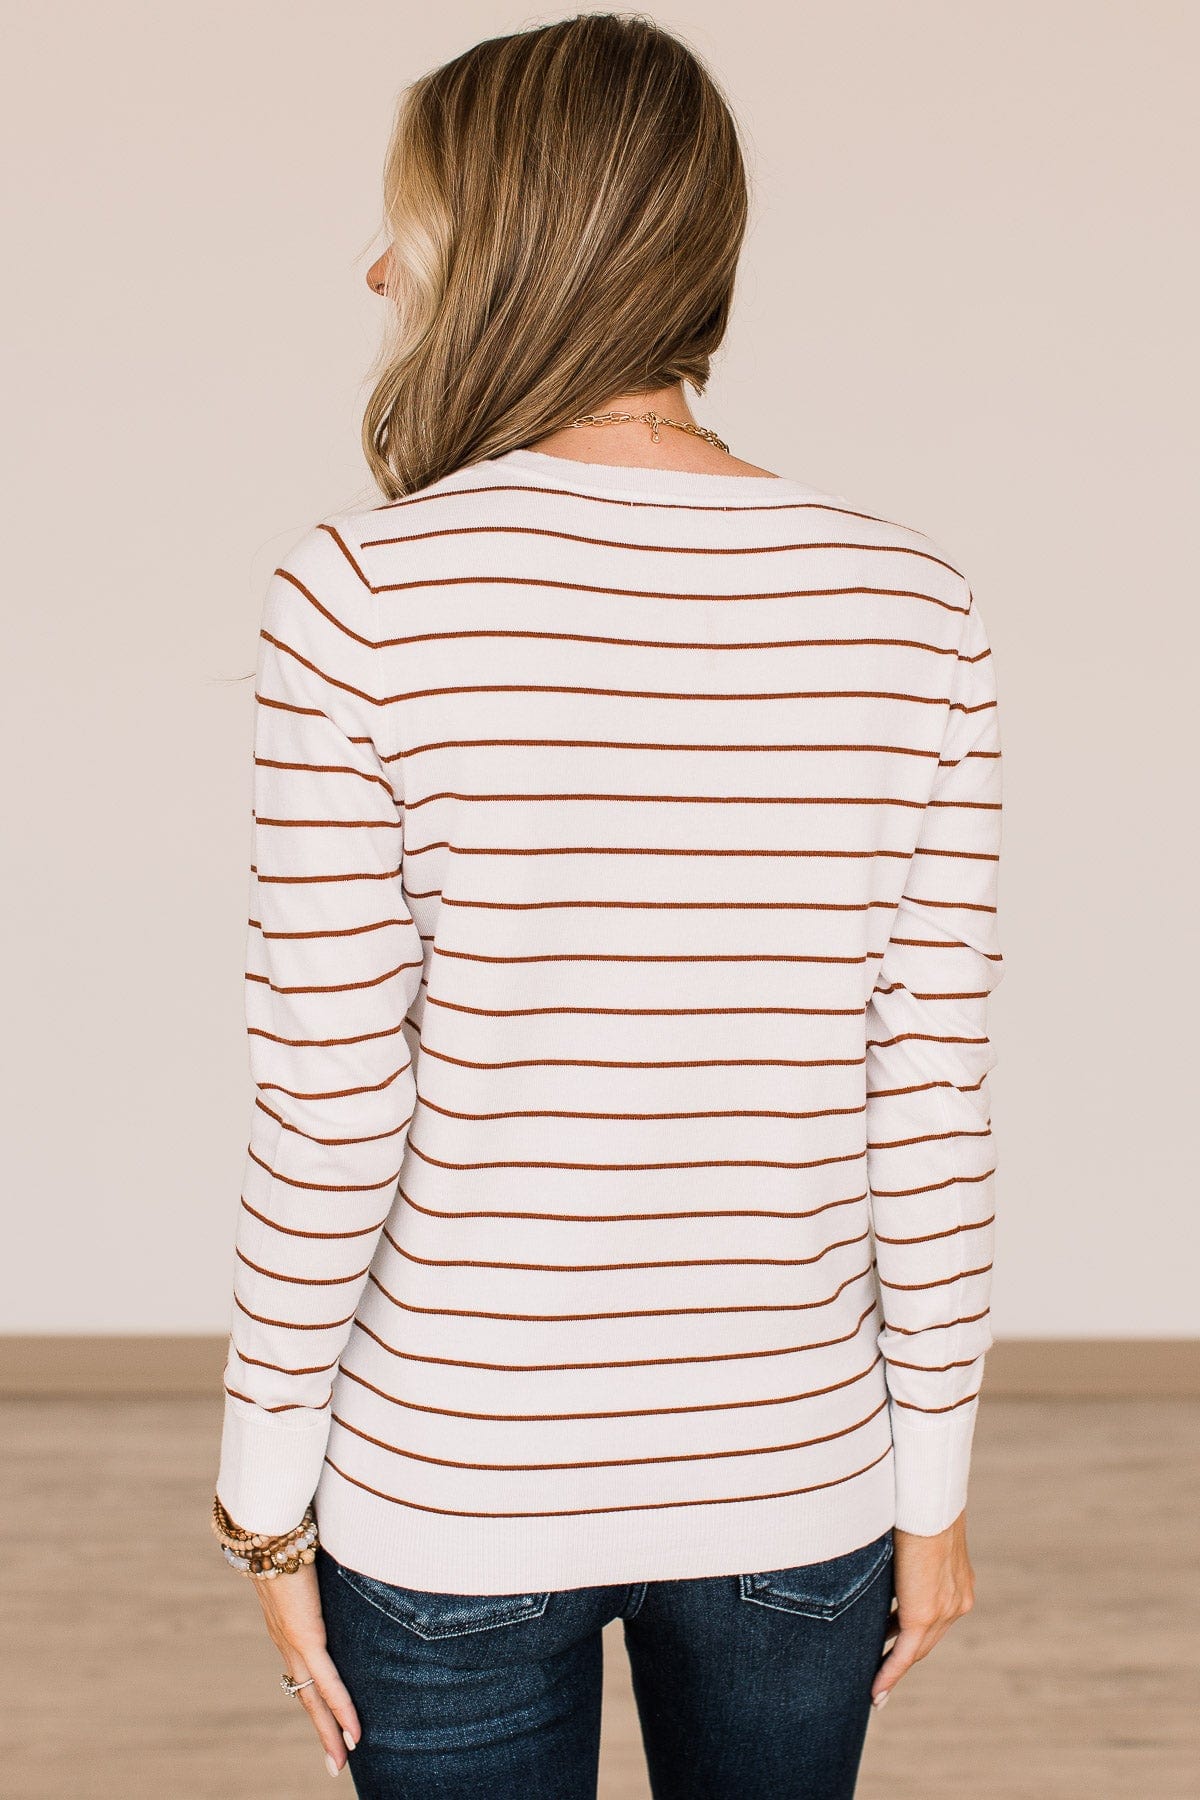 Grateful For You Striped Sweater- White & Copper